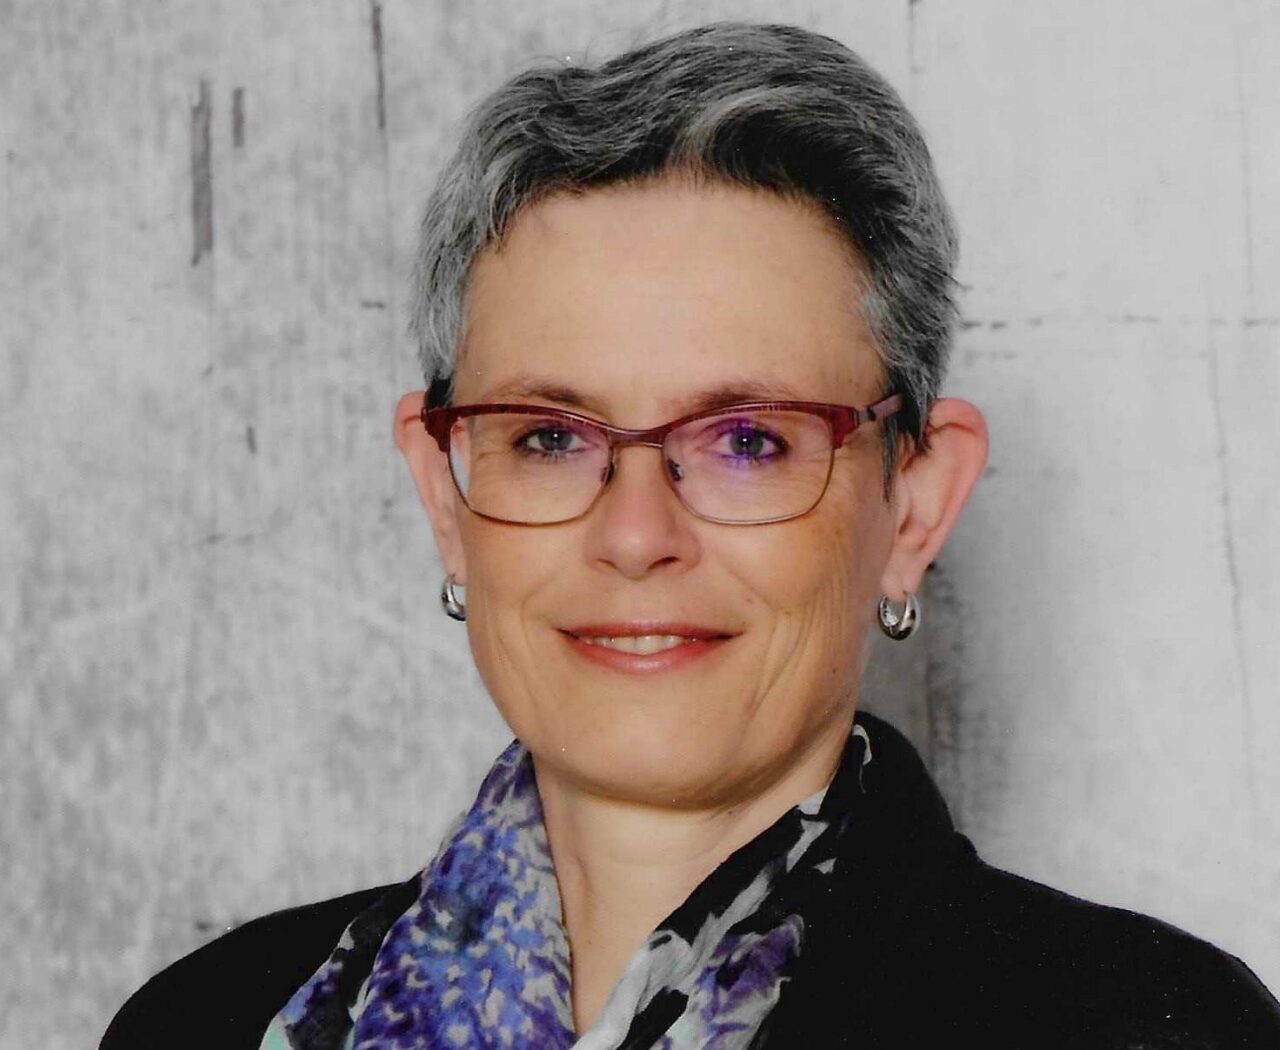 Dr. Regina Webersberger ist Allgemeinmedizinerin, Kneipp-Ärztin und Präsidentin der österreichischen Gesellschaft für Kneipp-Medizin und traditionelle europäische Medizin.